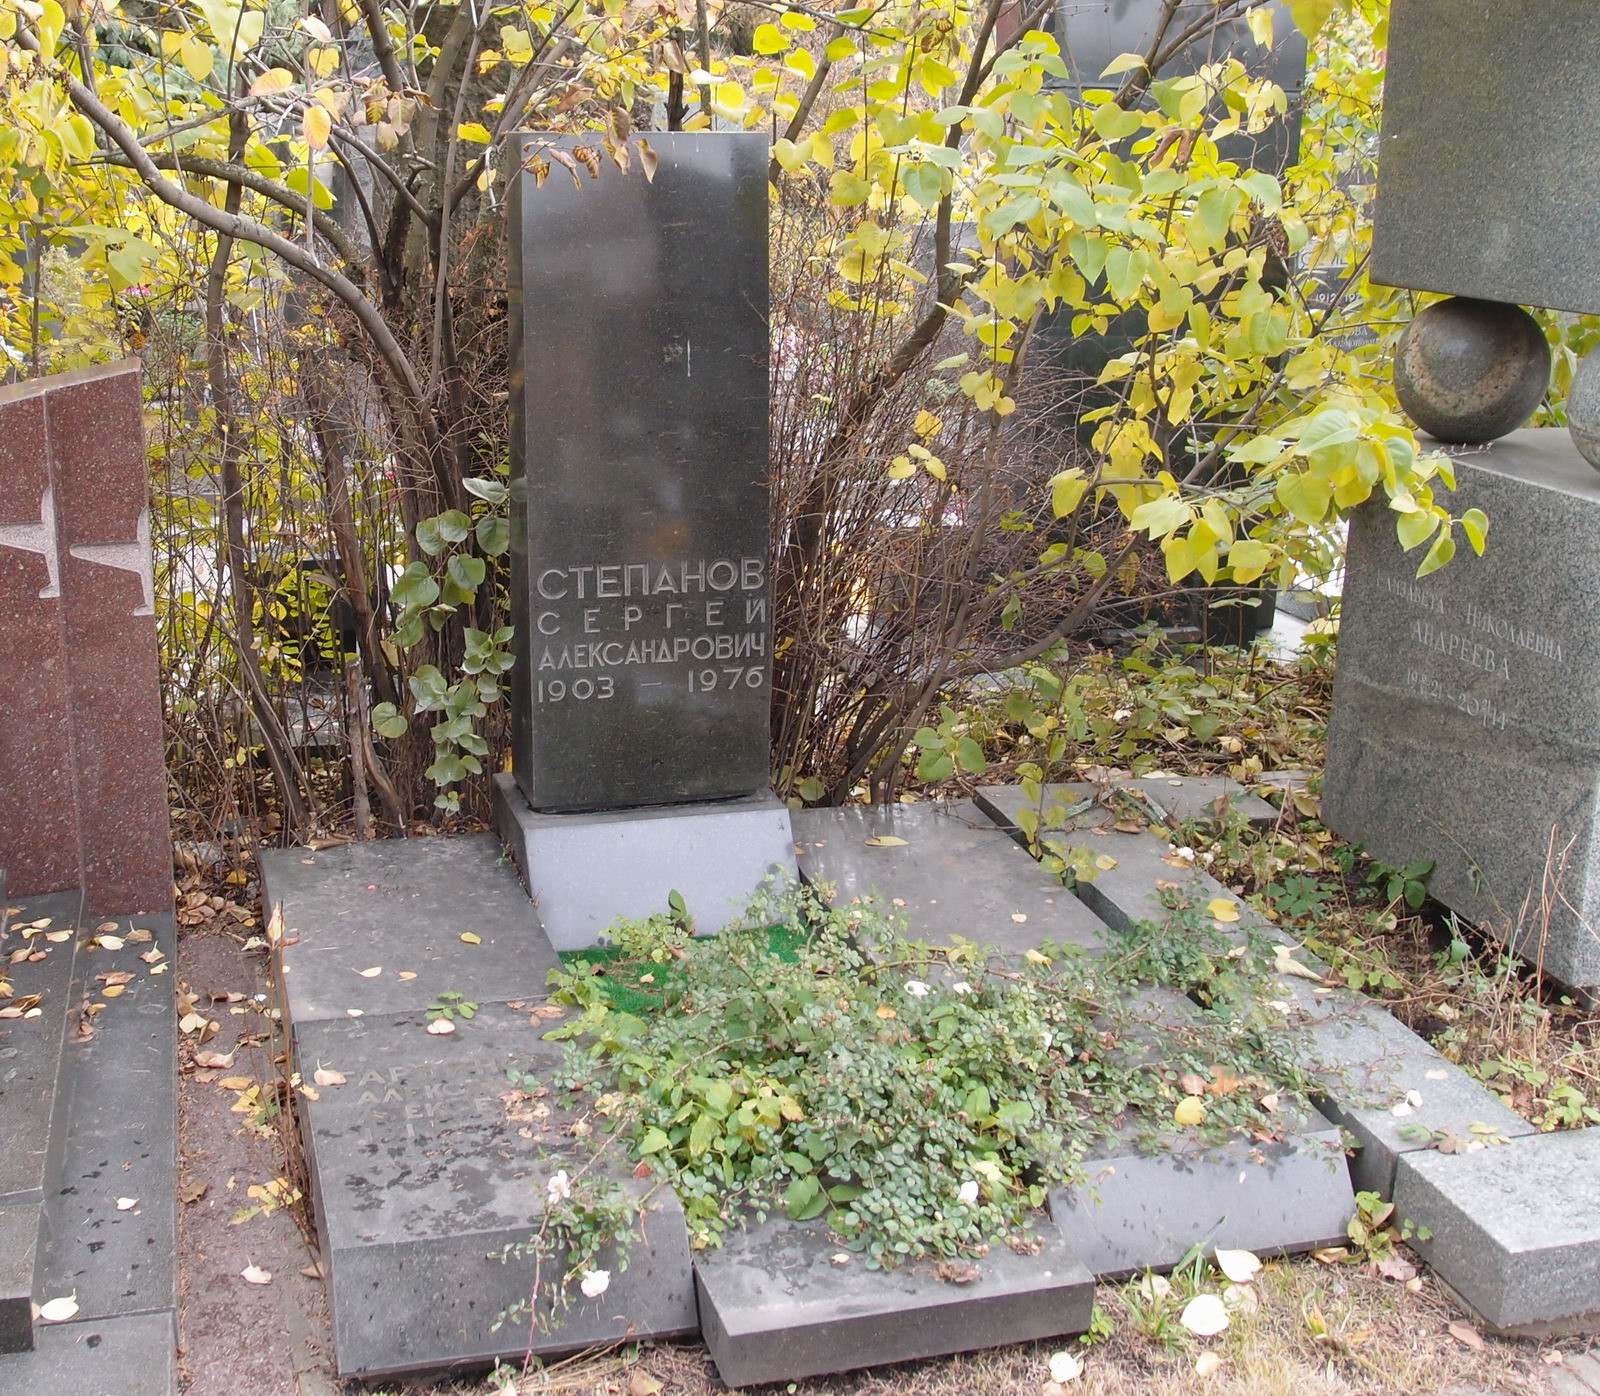 Памятник на могиле Степанова С.А. (1903-1976), арх. А.Шабельников, на Новодевичьем кладбище (7-12-15).